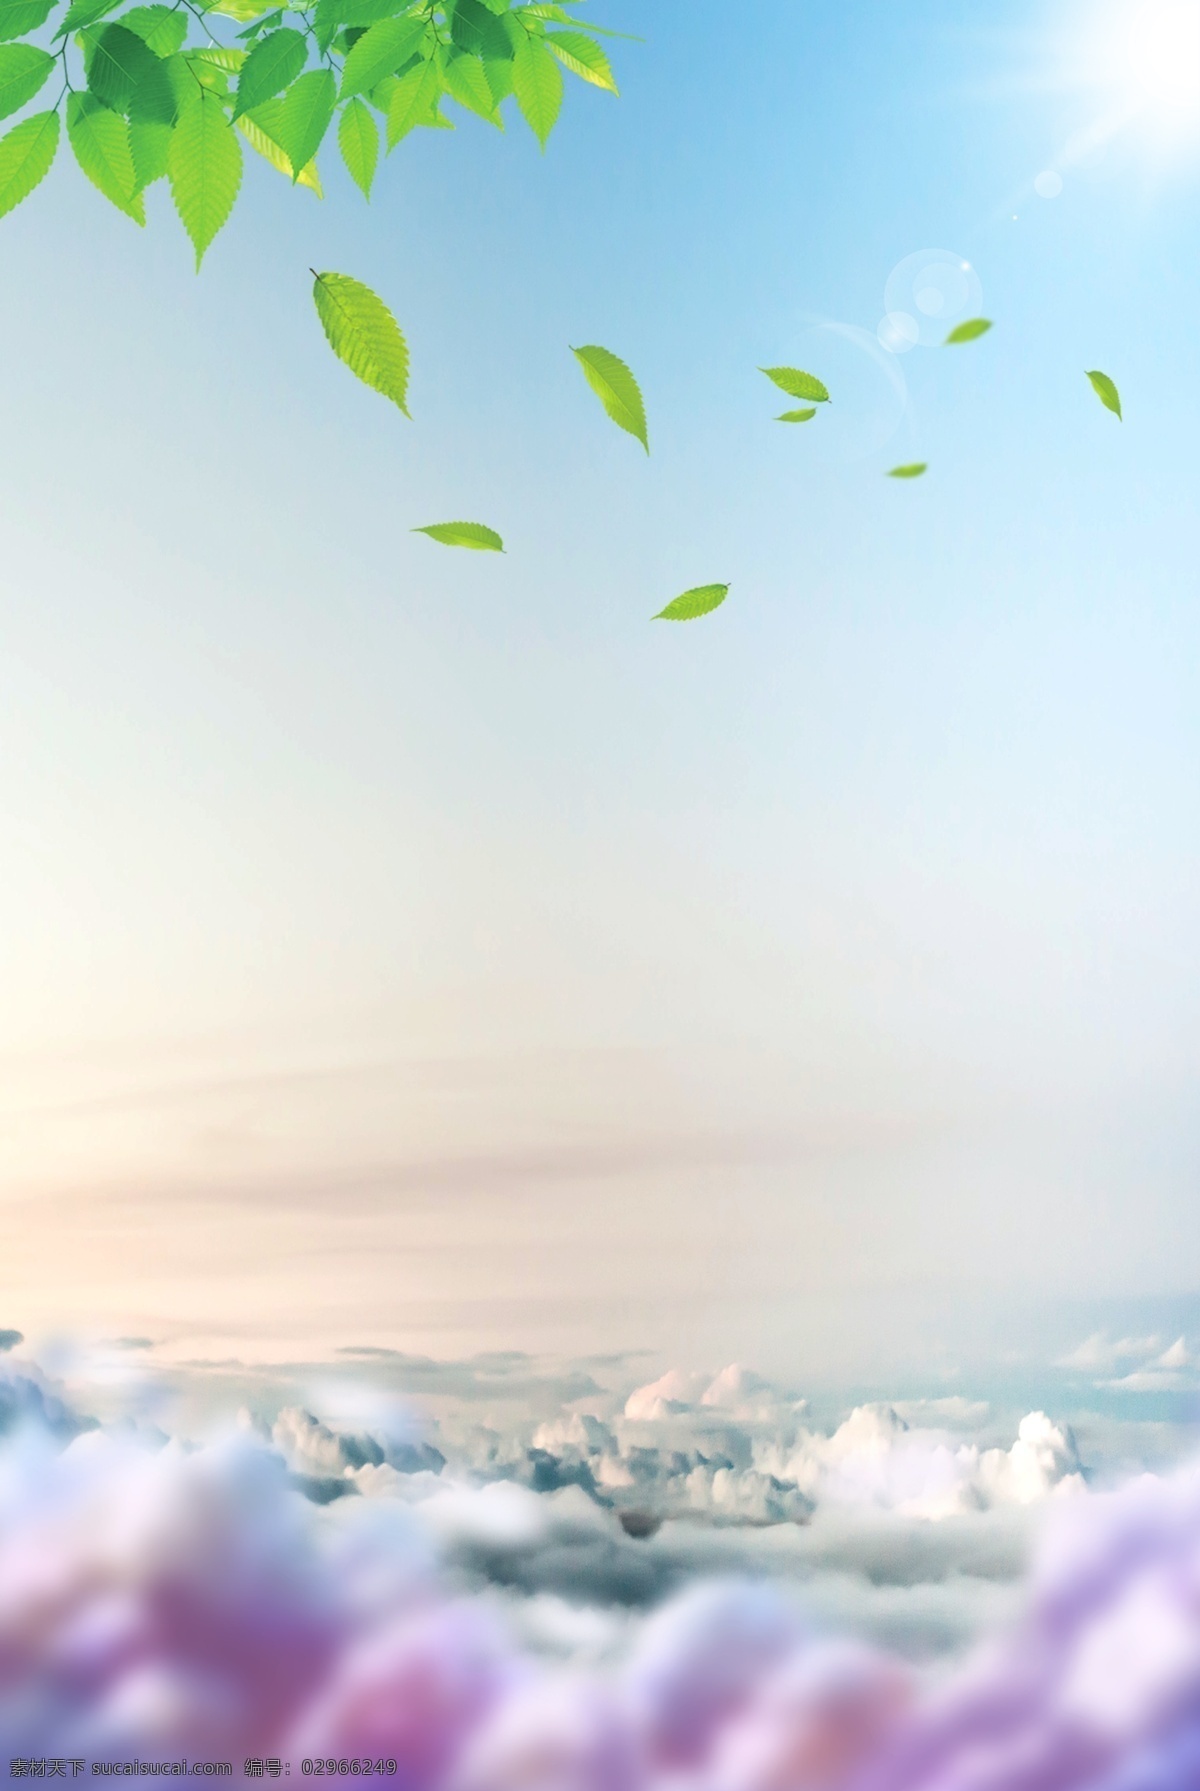 清新 大气 风景 广告 自然风景 春天 绿色 蓝天 白云 美丽风景 山水风景背景 绿叶背景 云彩背景